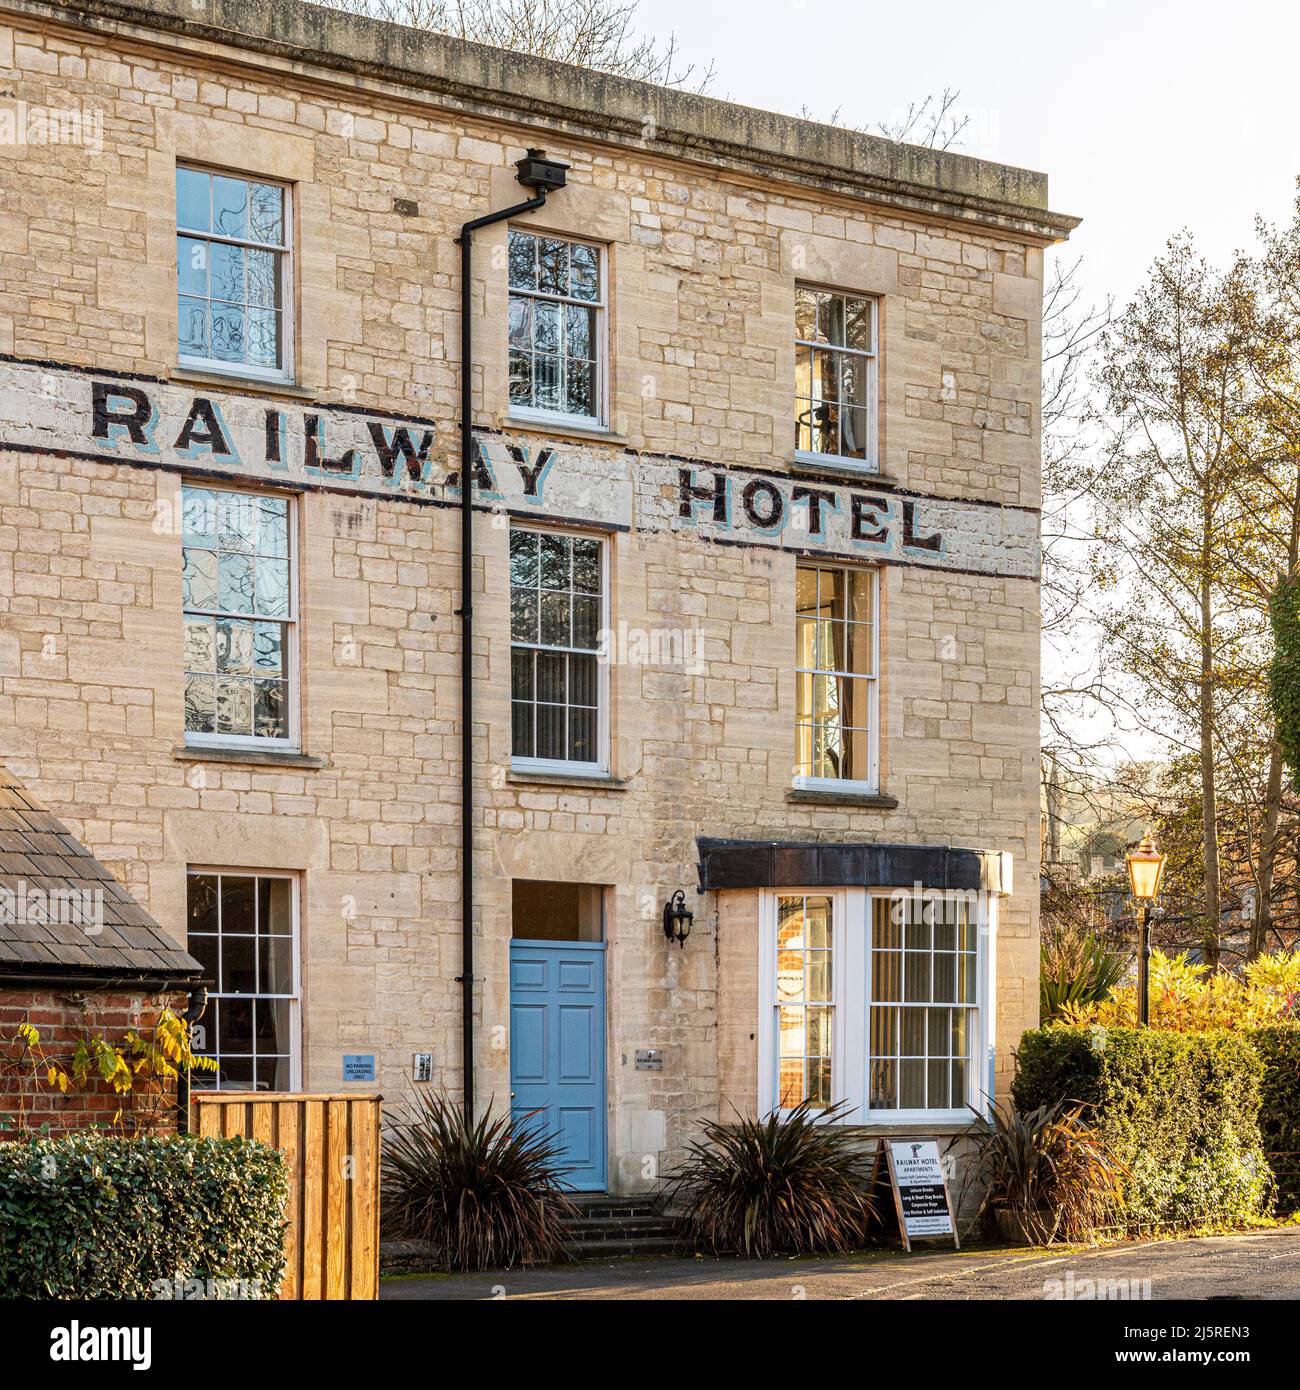 L'ancien hôtel de chemin de fer (maintenant converti en appartements de luxe) dans la petite ville de Nailsworth dans les vallées de Stroud, Gloucestershire, Angleterre Royaume-Uni Banque D'Images